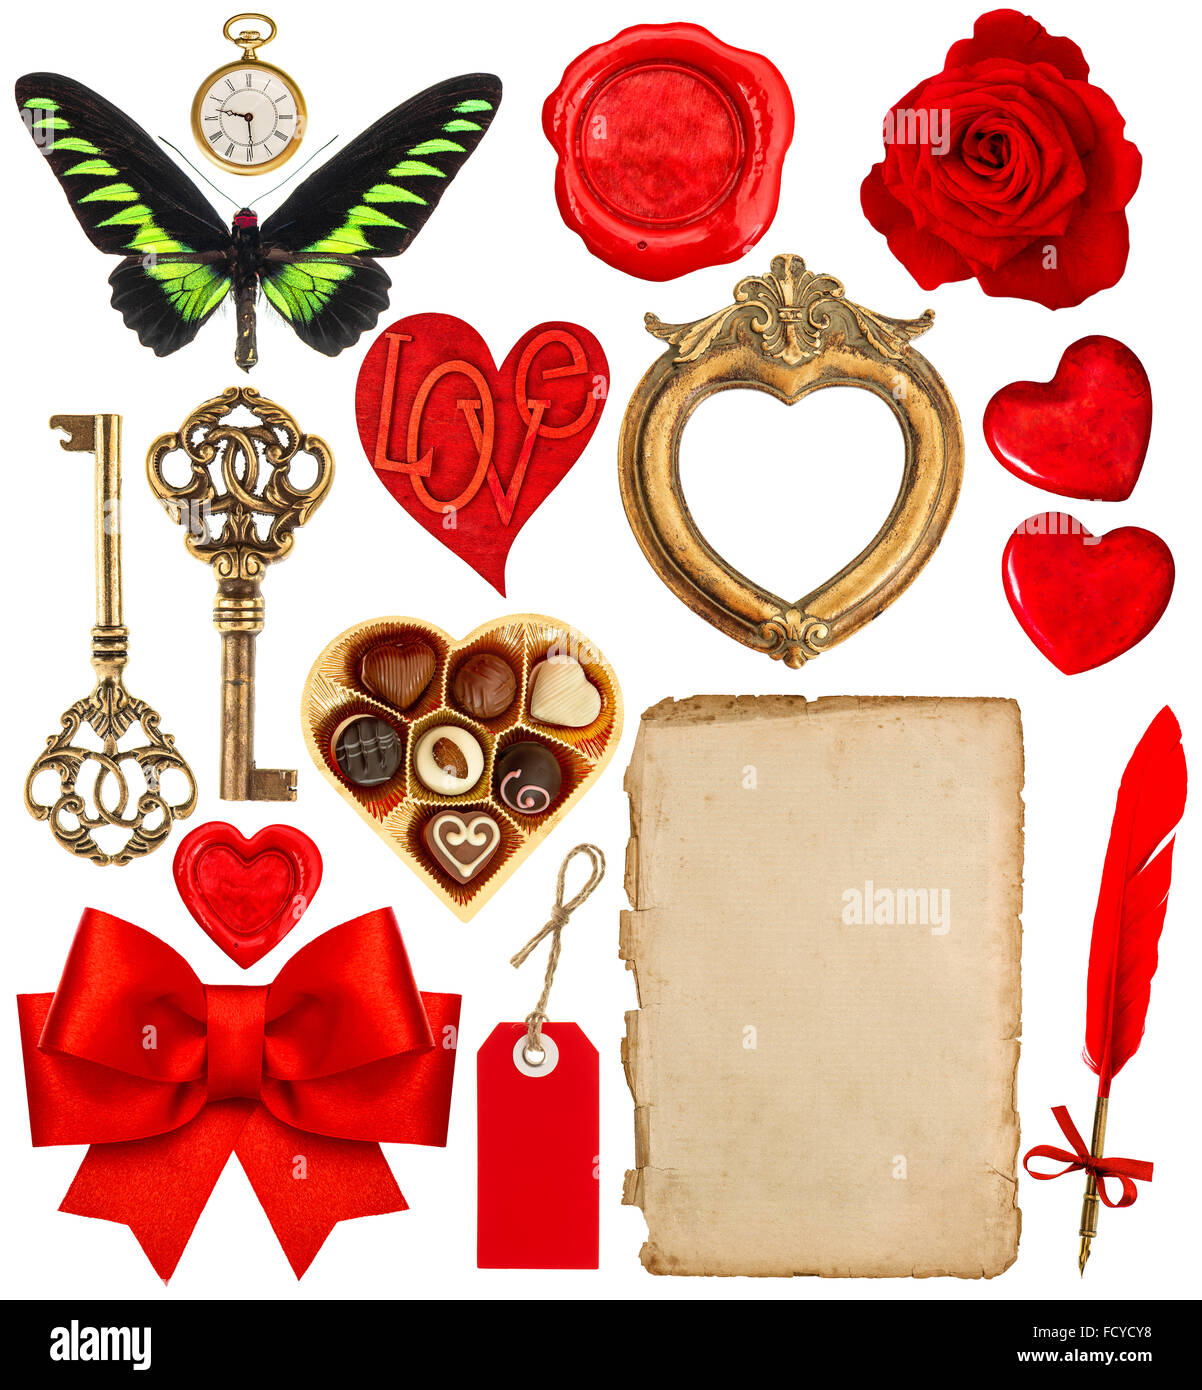 Collezione di oggetti per il giorno di San Valentino scrapbook. Carta con penna, cuori rossi, cornice dorata, antico orologio, chiave, giù penna, f Foto Stock